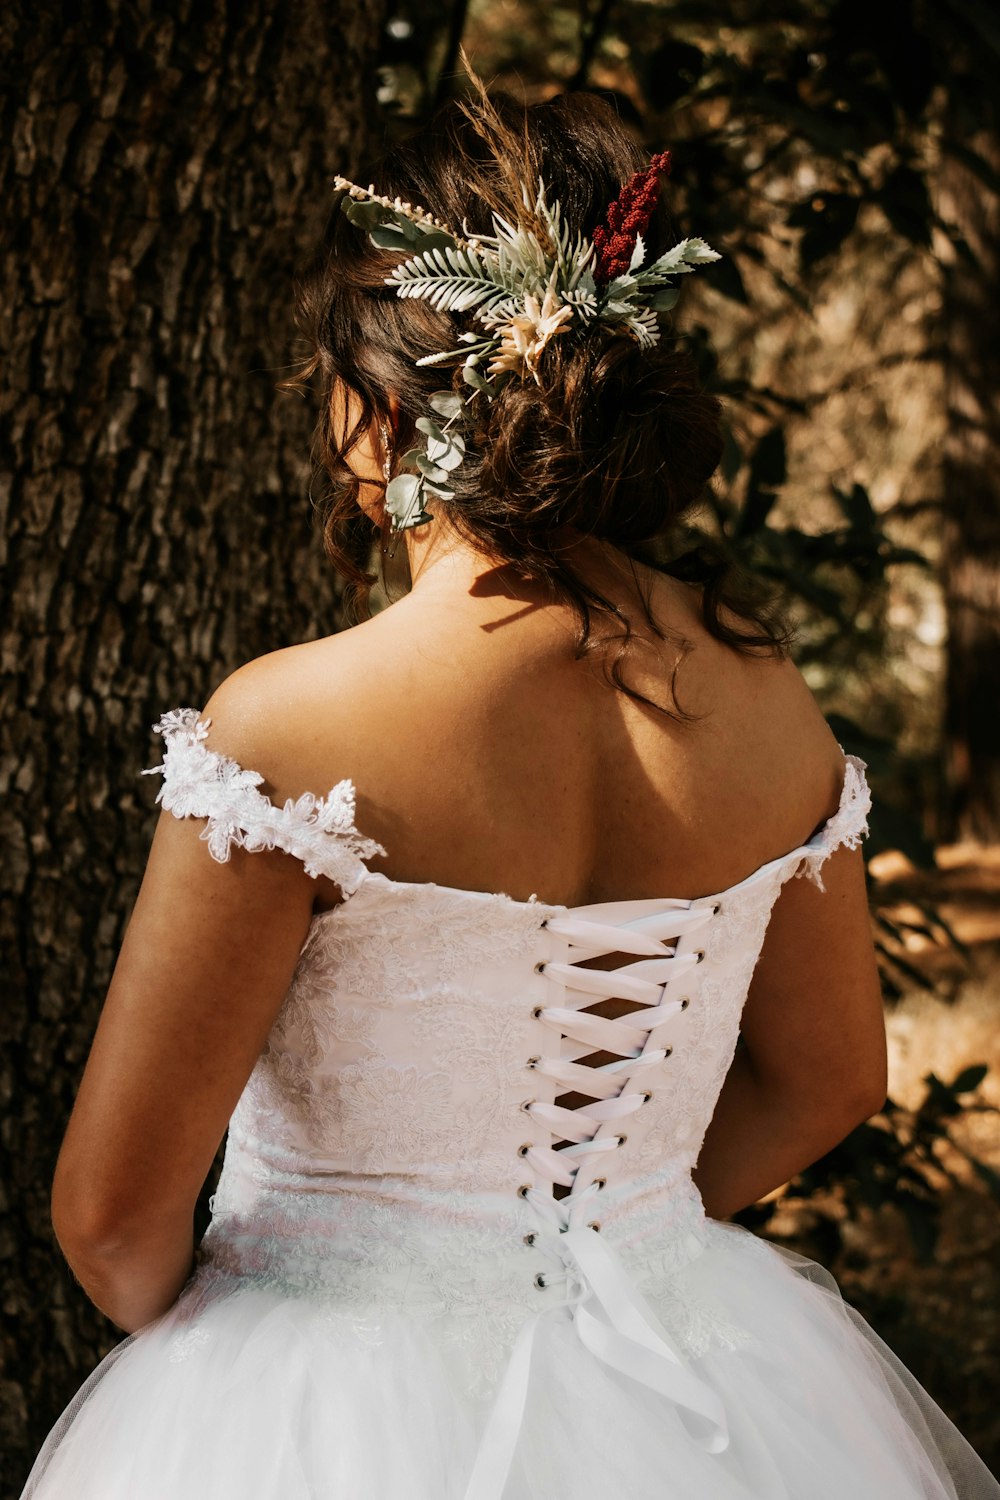 a woman wearing a white dress